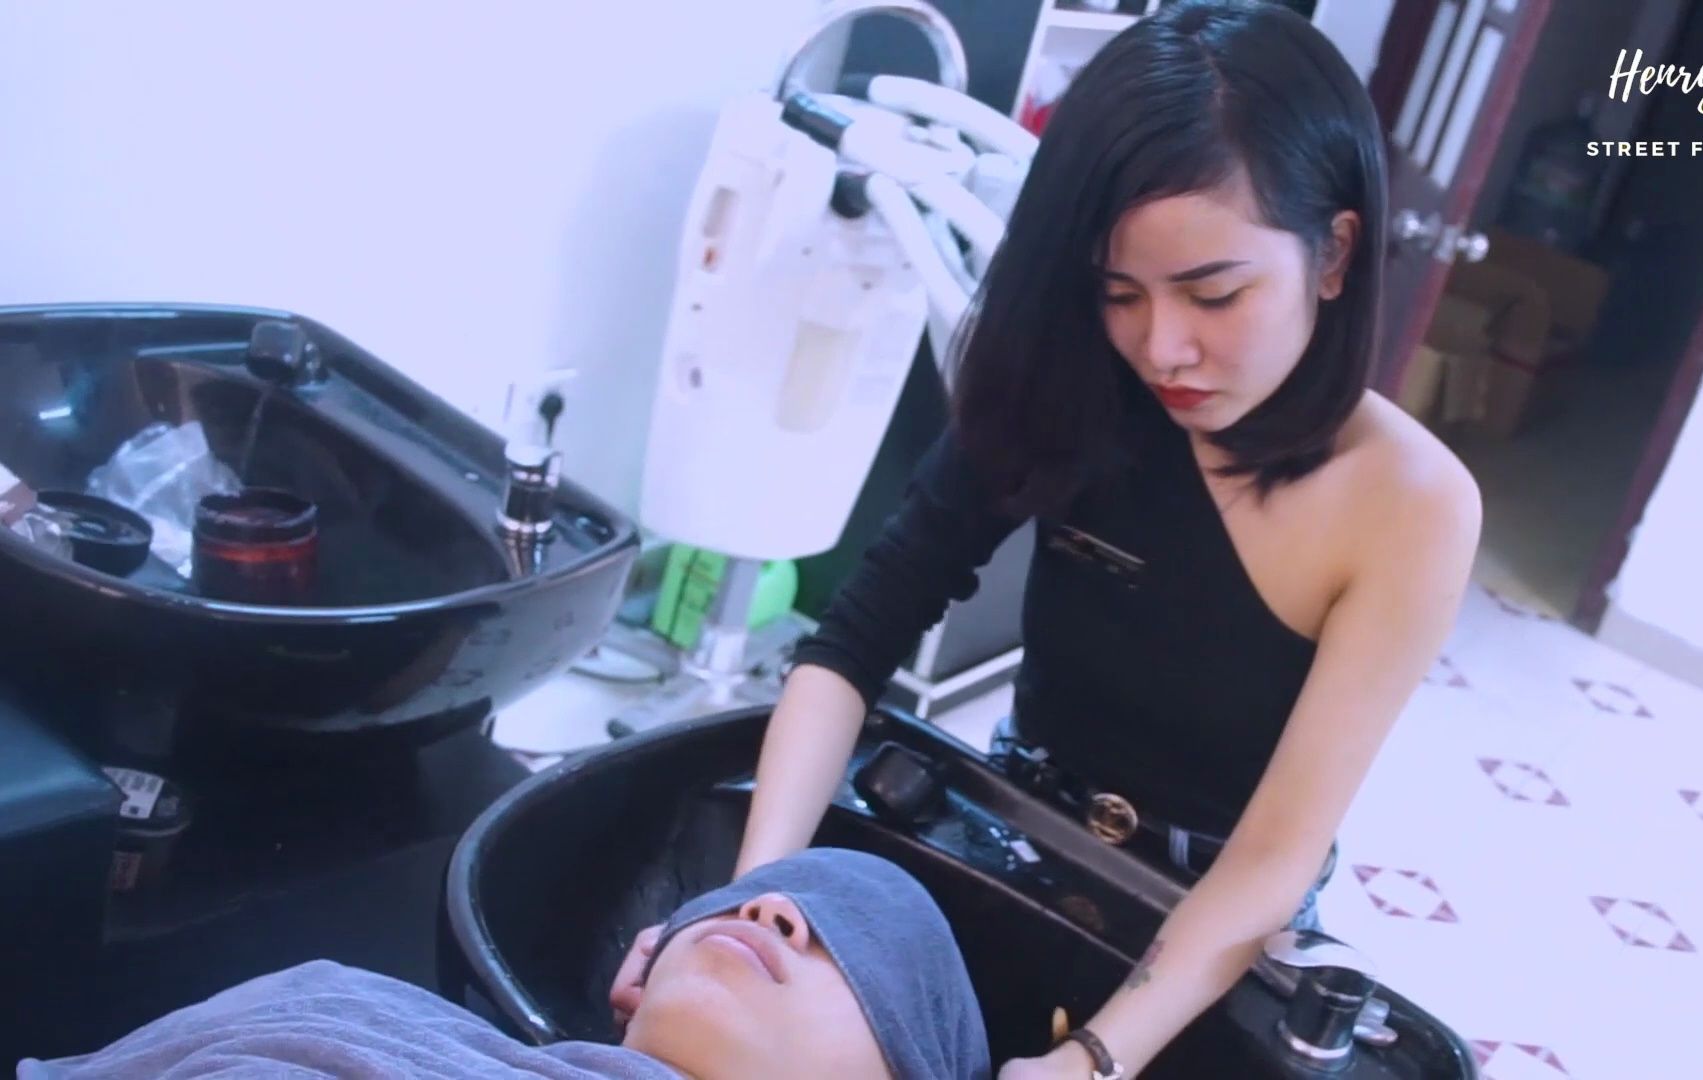 越南理发店洗头洗发放松按摩 冷艳美女技师技术相当棒